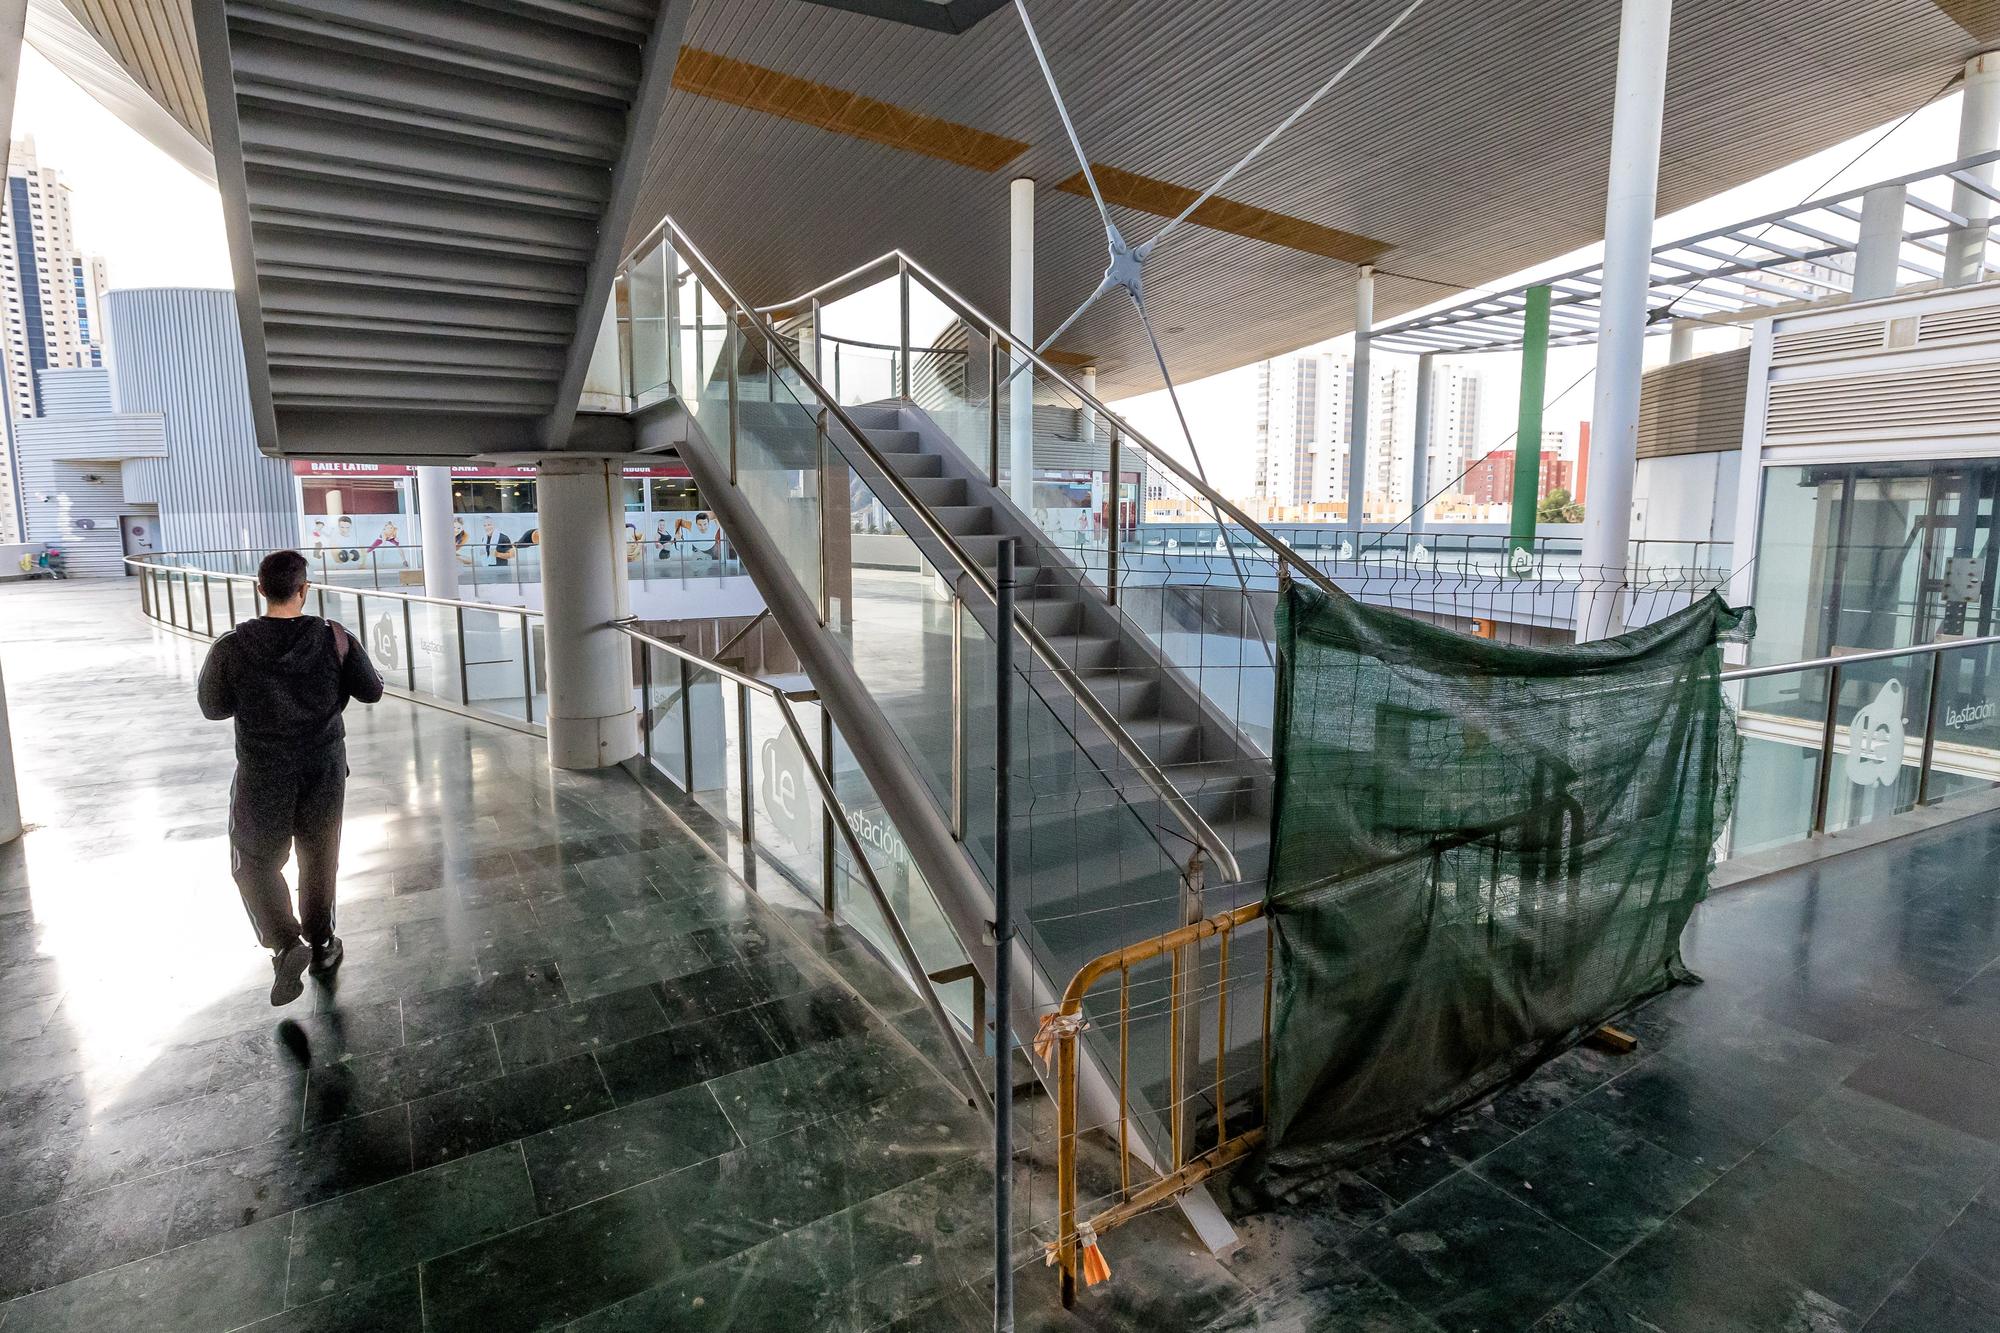 El "atasco" eterno de la estación de autobuses de Benidorm